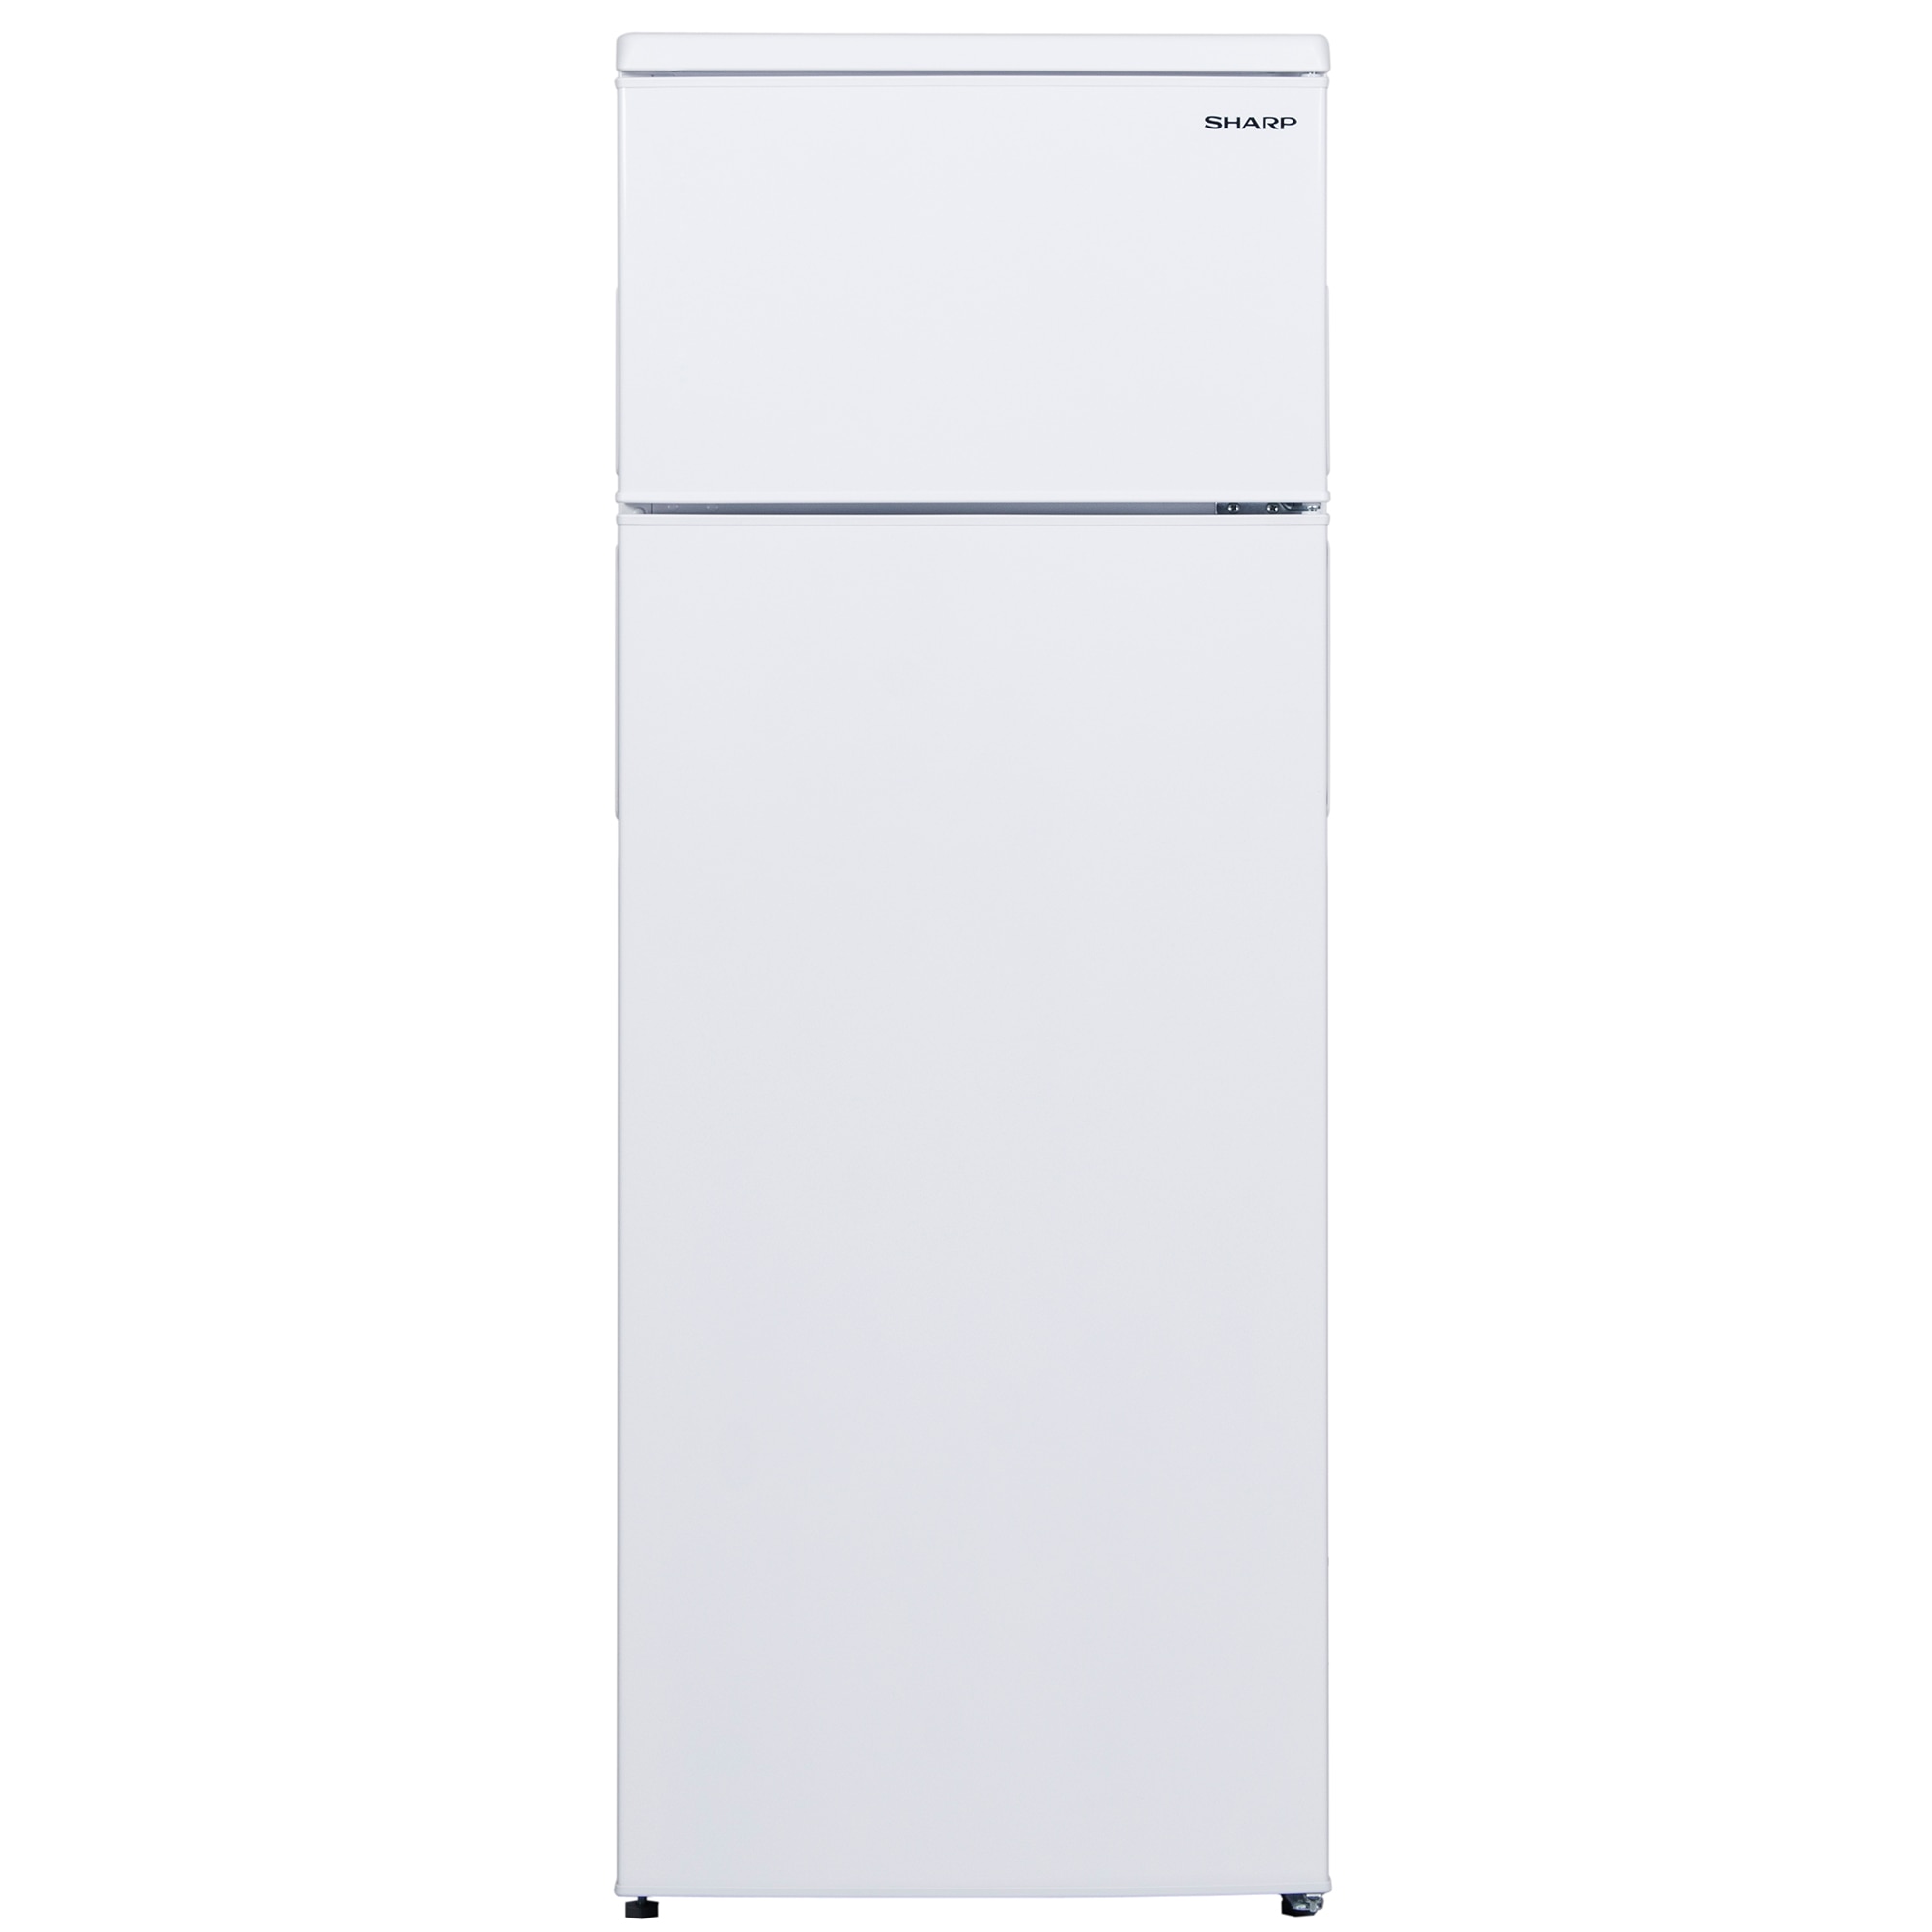 Хладилник Sharp SJ-T1227M4W с обем от 227 л.